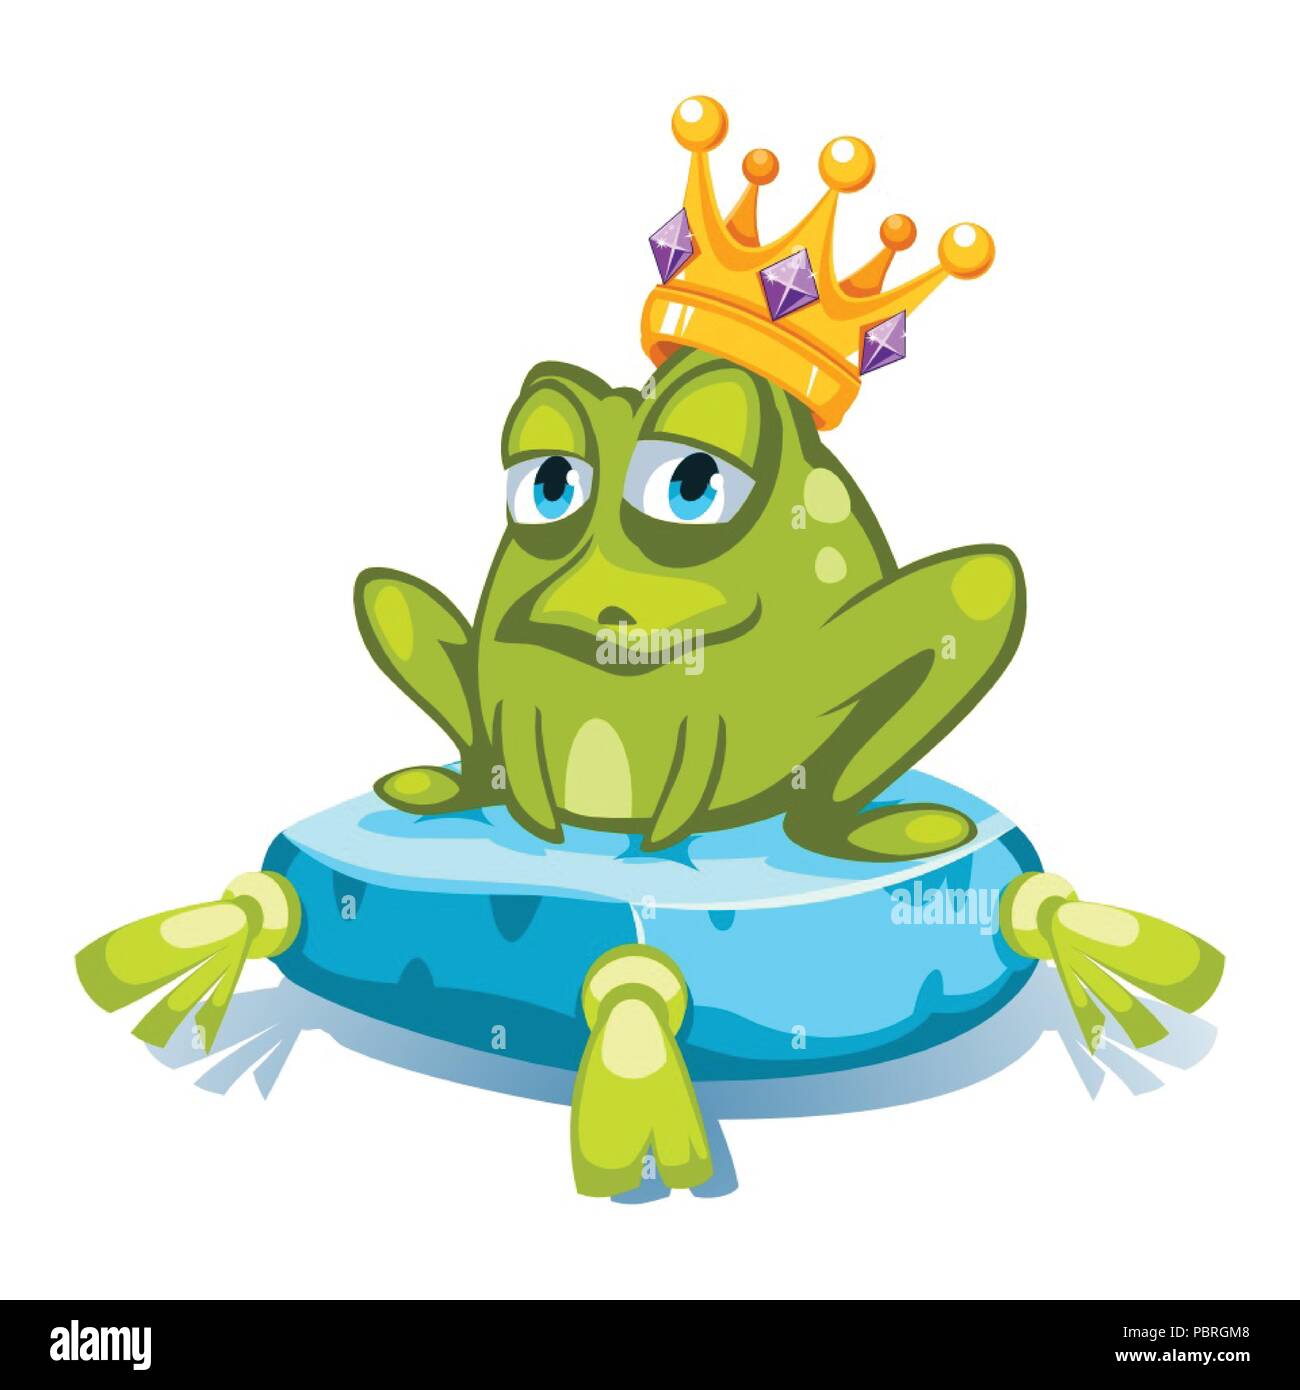 Cartoon grüner Frosch Charakter mit einer Krone mit Edelsteinen, sitzend auf einem blauen Kissen Stock Vektor